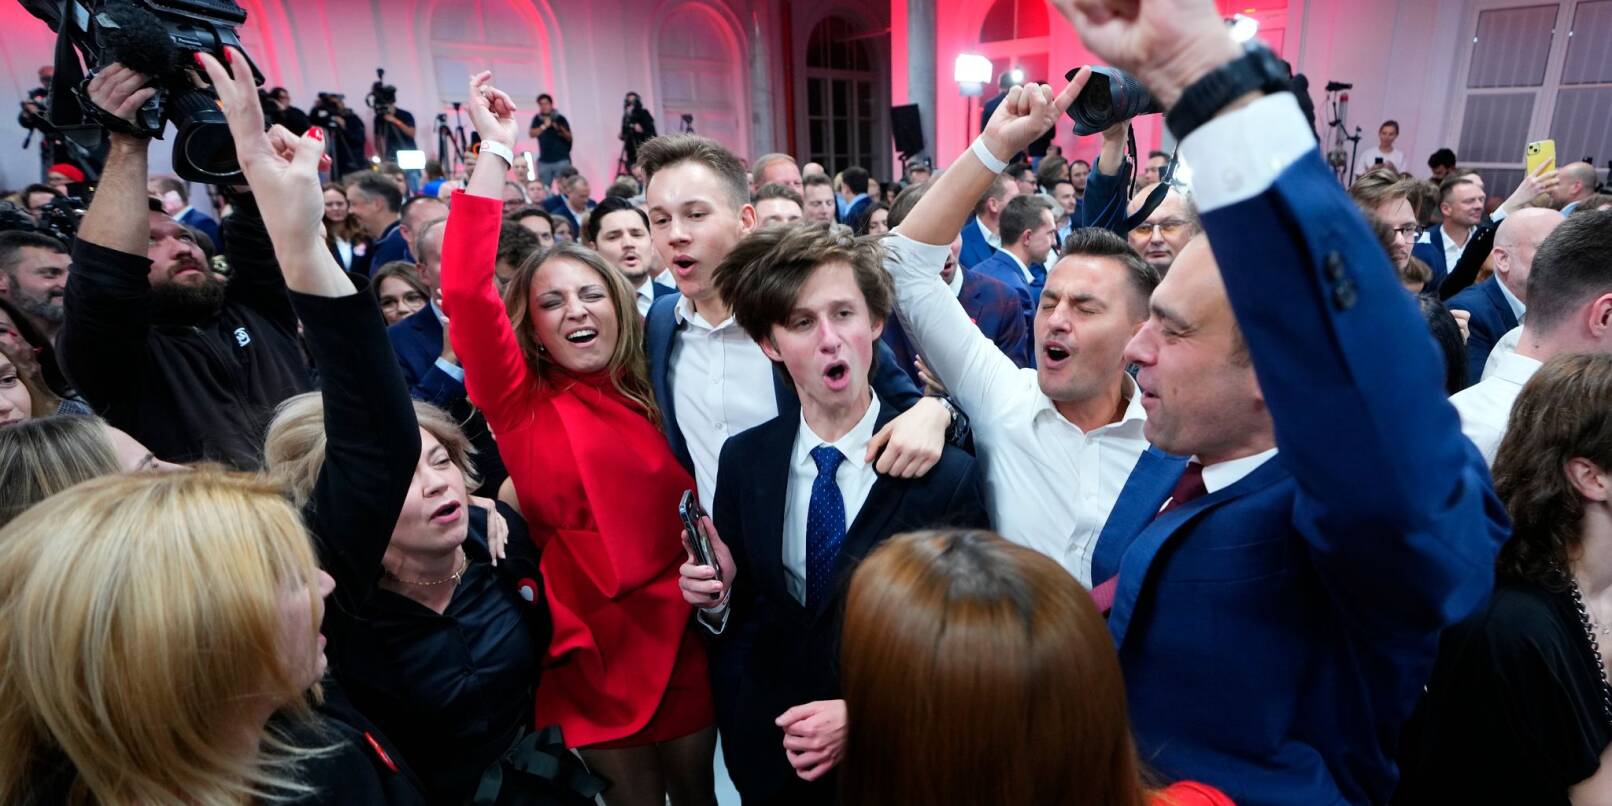 Anhänger des ehemaligen polnischen Ministerpräsidenten und Oppositionsführers Donald Tusk feiern in der Parteizentrale der liberalkonservativen Bürgerkoalition (KO) in Warschau.